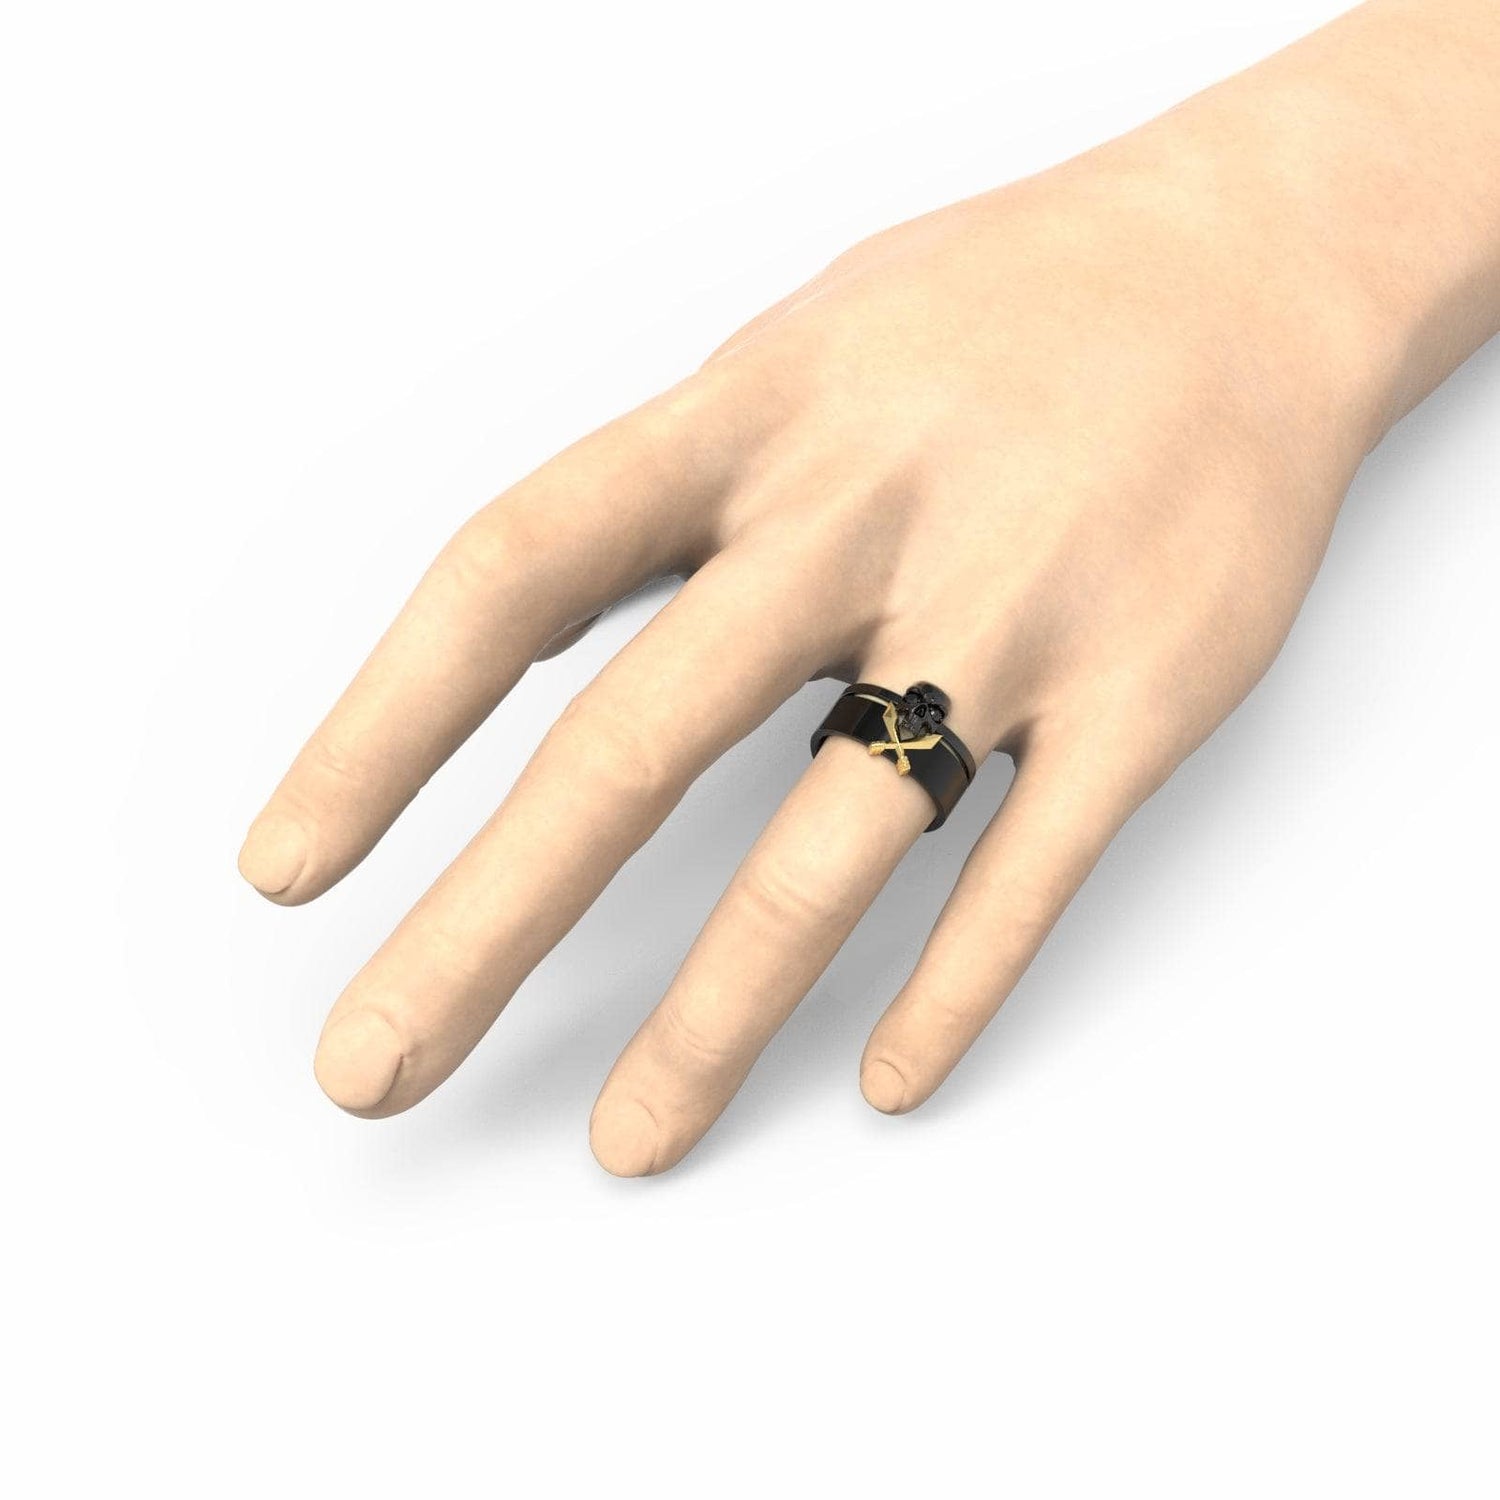 Necromancer's Couples Ring- 14k Rose Gold Video Game Inspired Rings - Black Diamonds New York